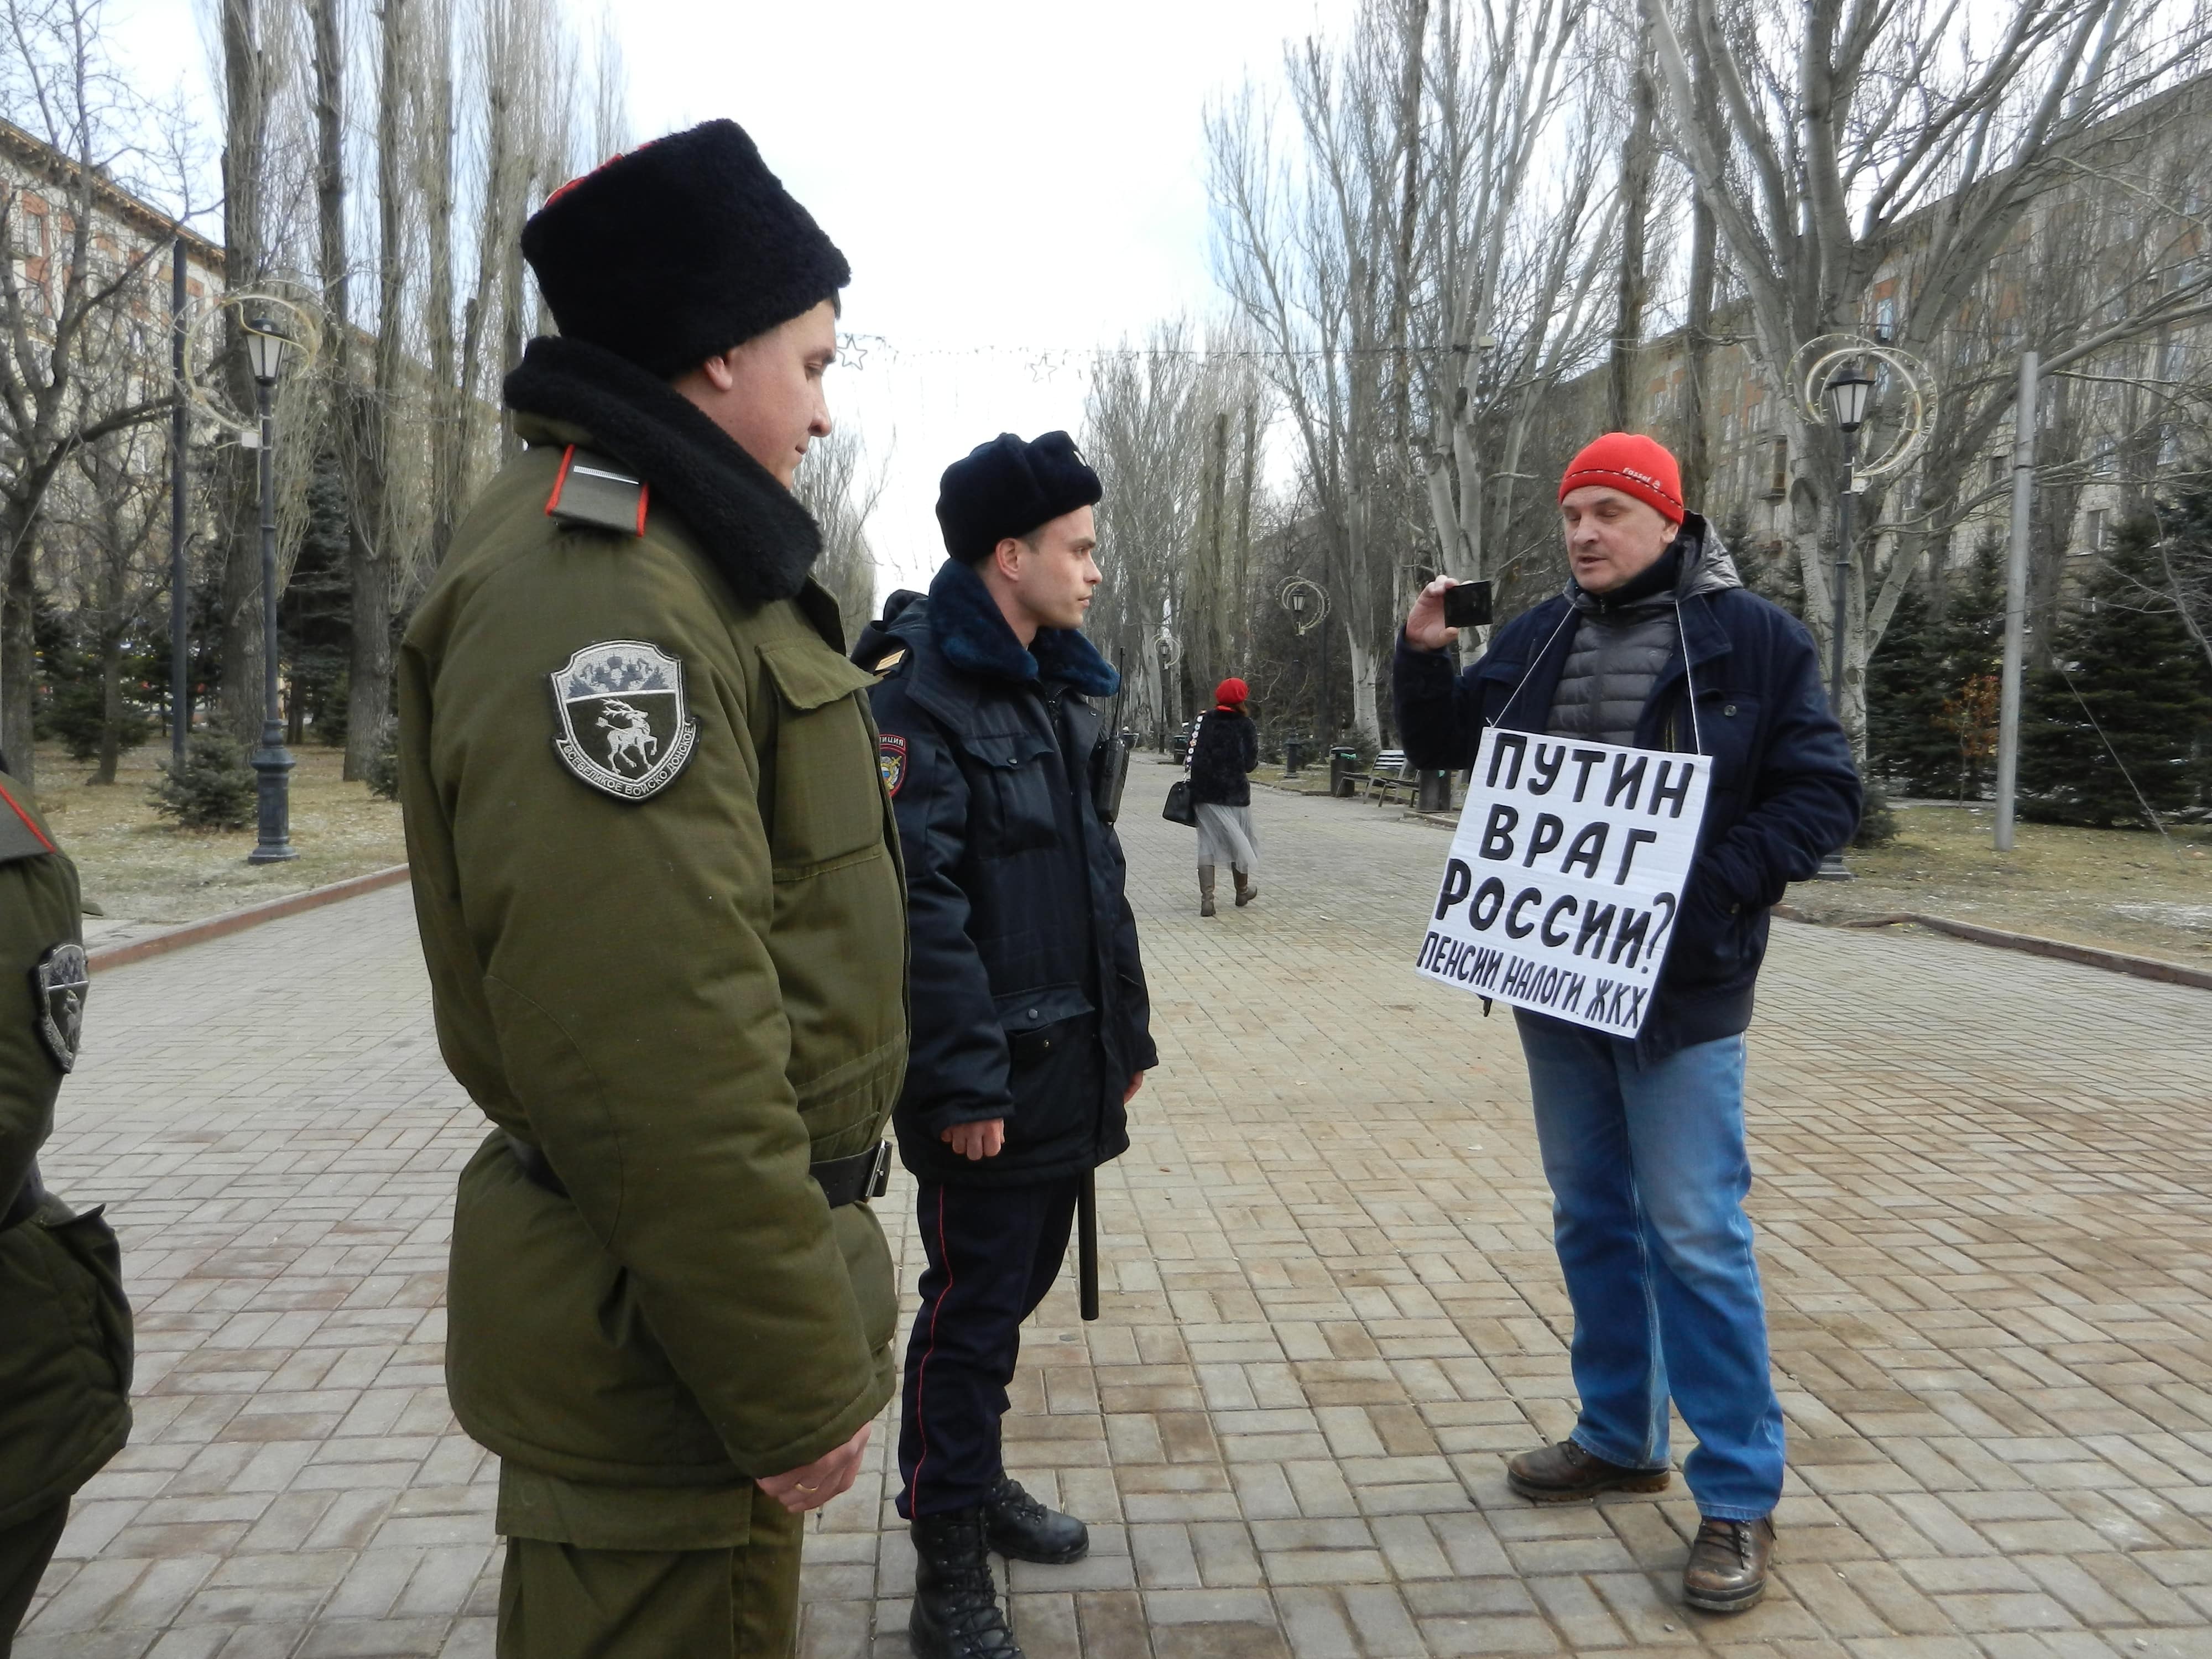 Владимир Тельпук на пикете в Волгограде 9 марта 2019 года. Фото Татьяны Филимоновой для «Кавказского узла»